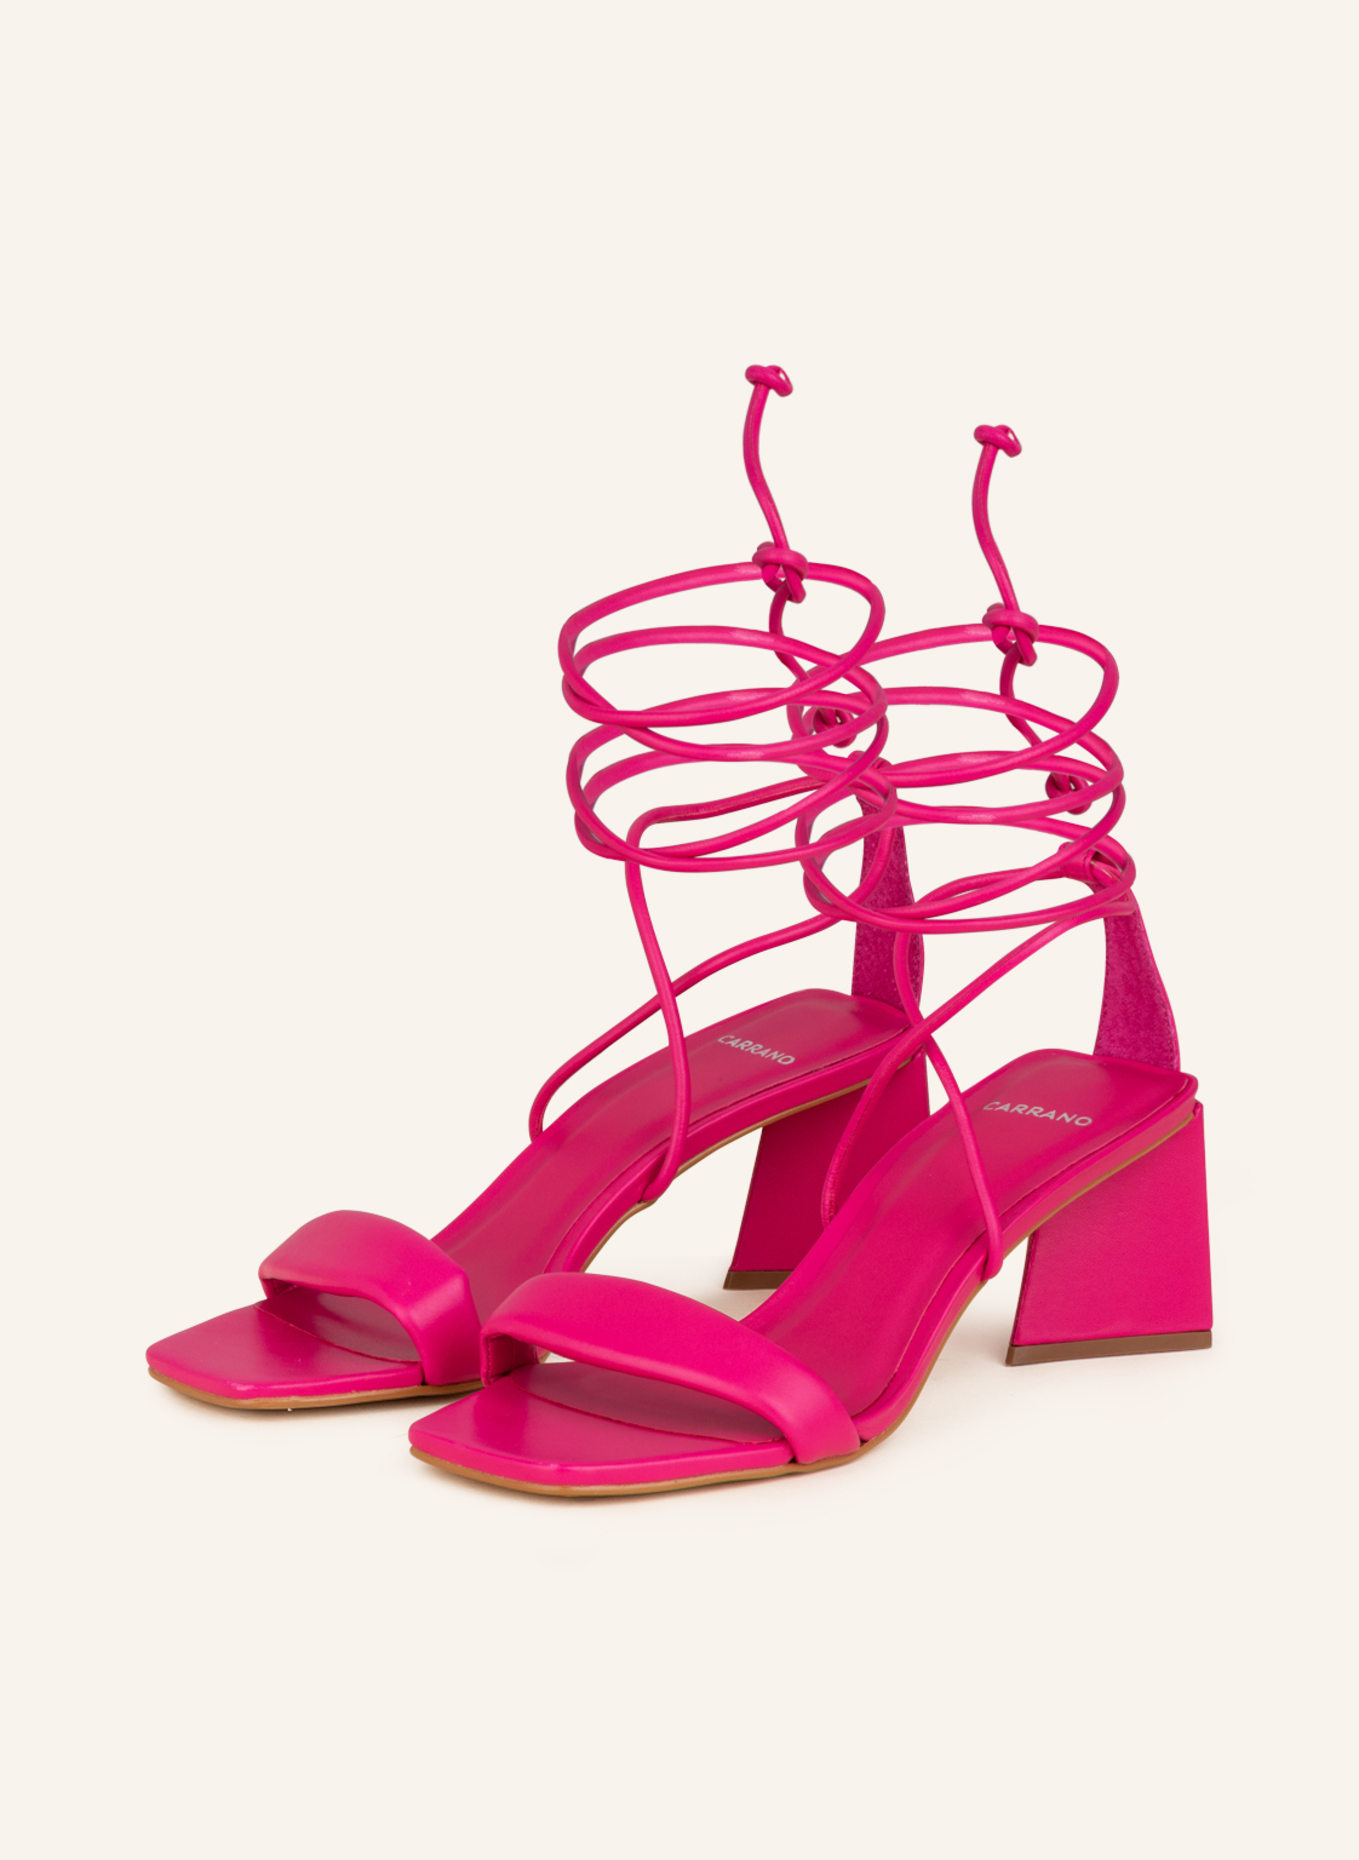 CARRANO Sandals, Color: FUCHSIA (Image 1)